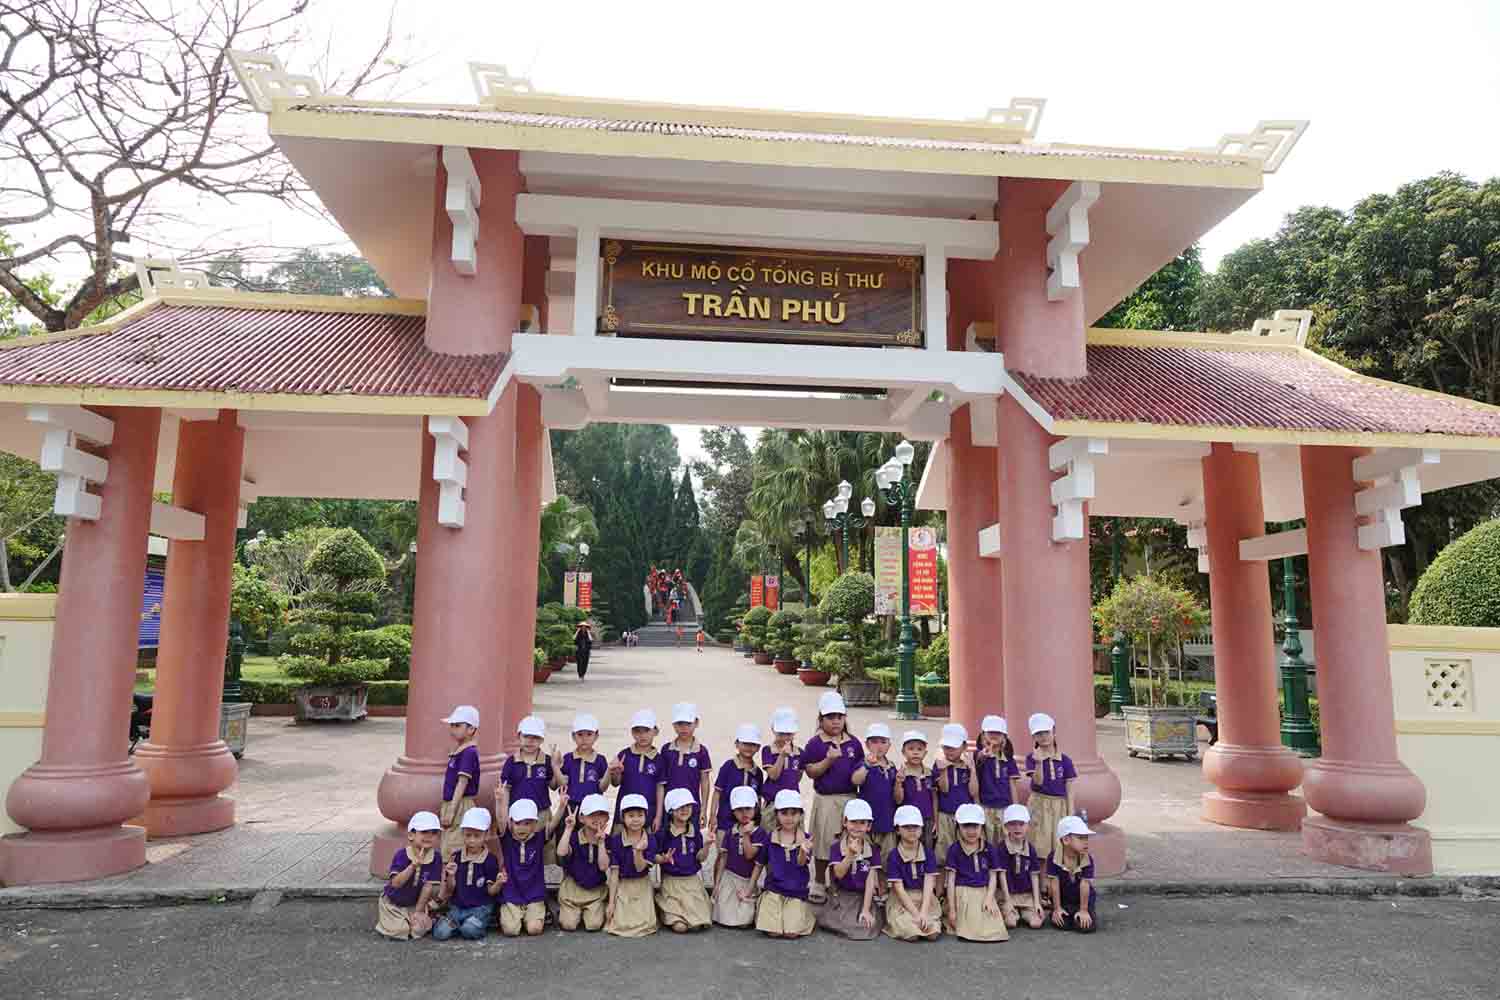 Học sinh đi trải nghiệm, chụp ảnh lưu niệm ở khu mộ cố Tổng Bí thư Trần Phú. Ảnh: Trần Tuấn.